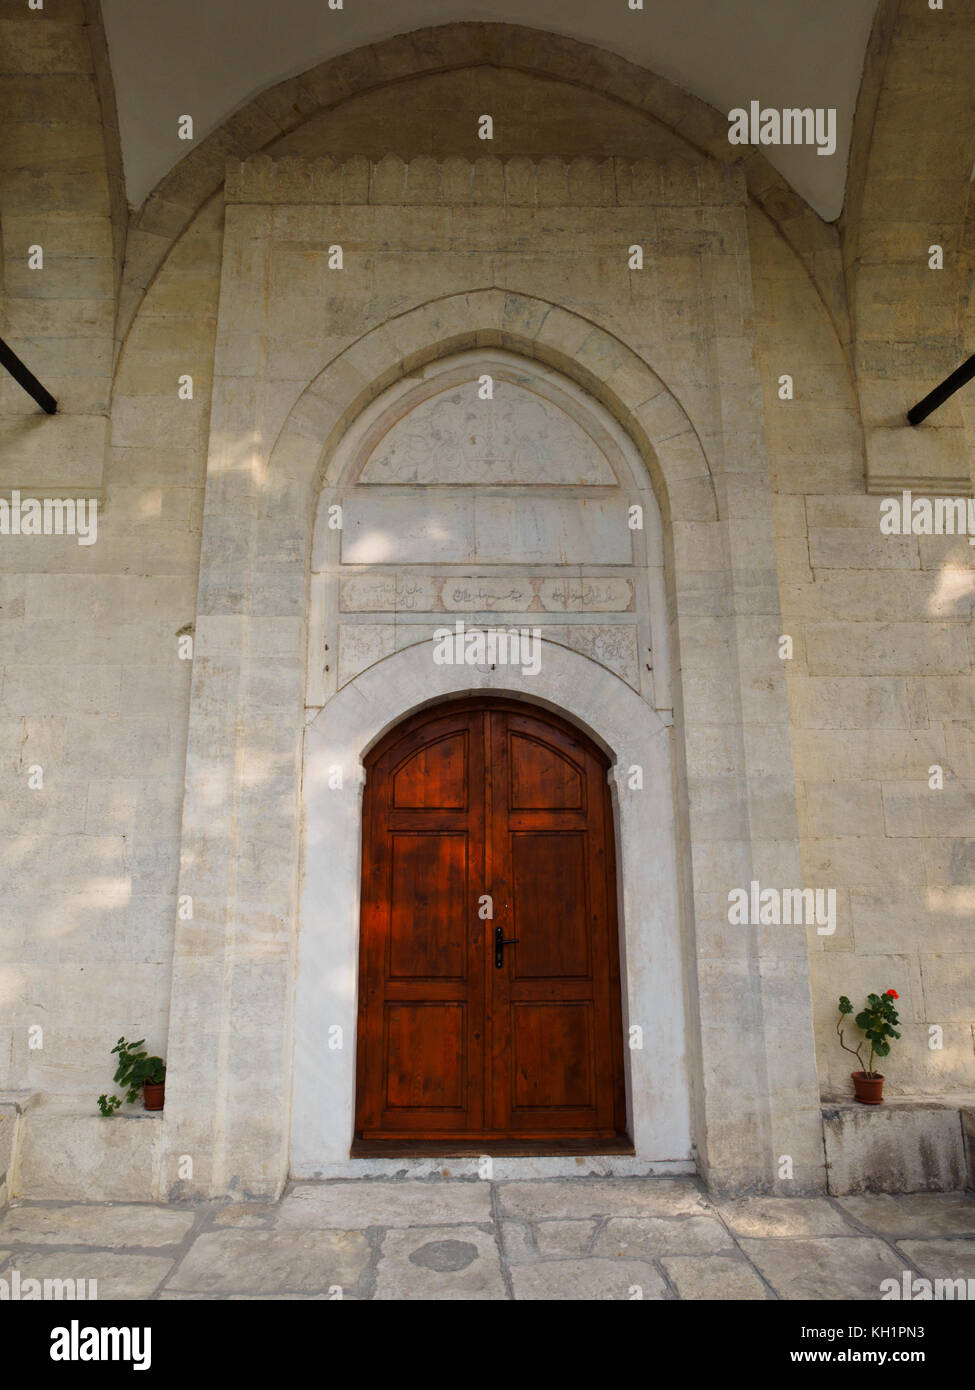 The Islamic-styled entrance of Uzundzhovo Church in Uzundzhovo village, Haskovo. Stock Photo